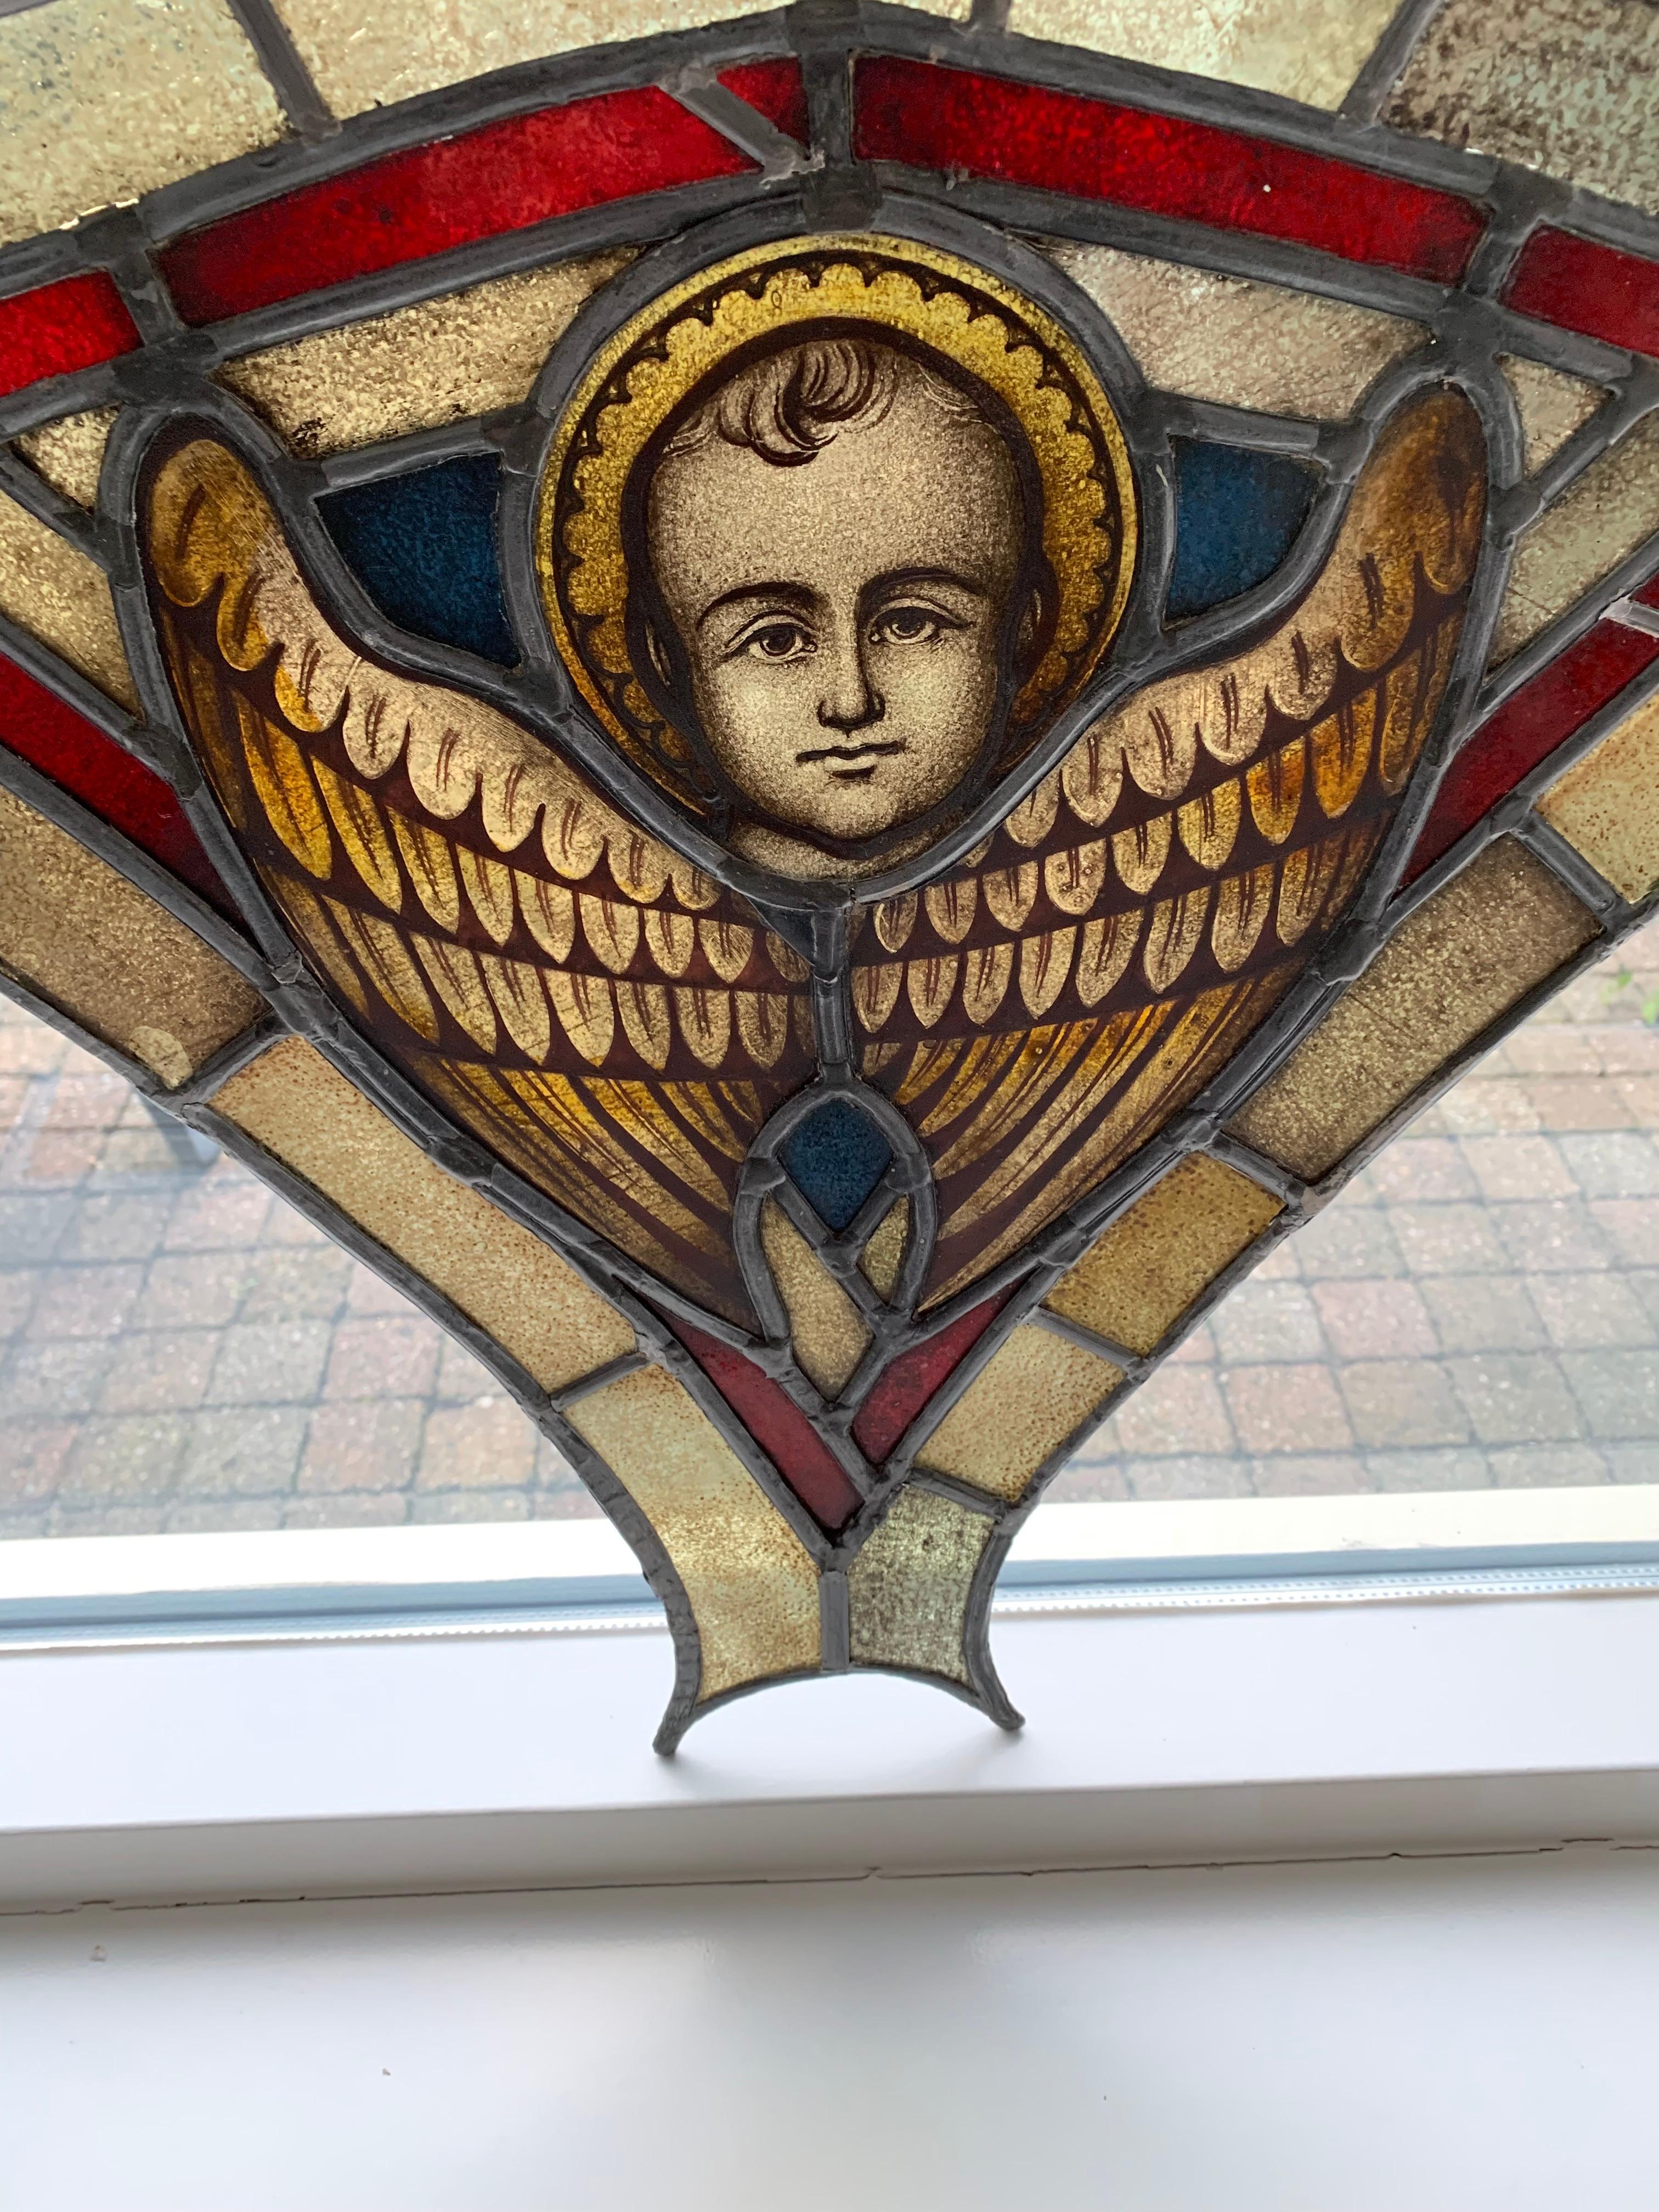 Panneau unique en son genre, en verre plombé et en vitrail, datant du 19e siècle.

Ce cadre de fenêtre en verre incroyablement bien fait représentant un ange magnifiquement peint à la main est une autre de nos récentes trouvailles. La sérénité et